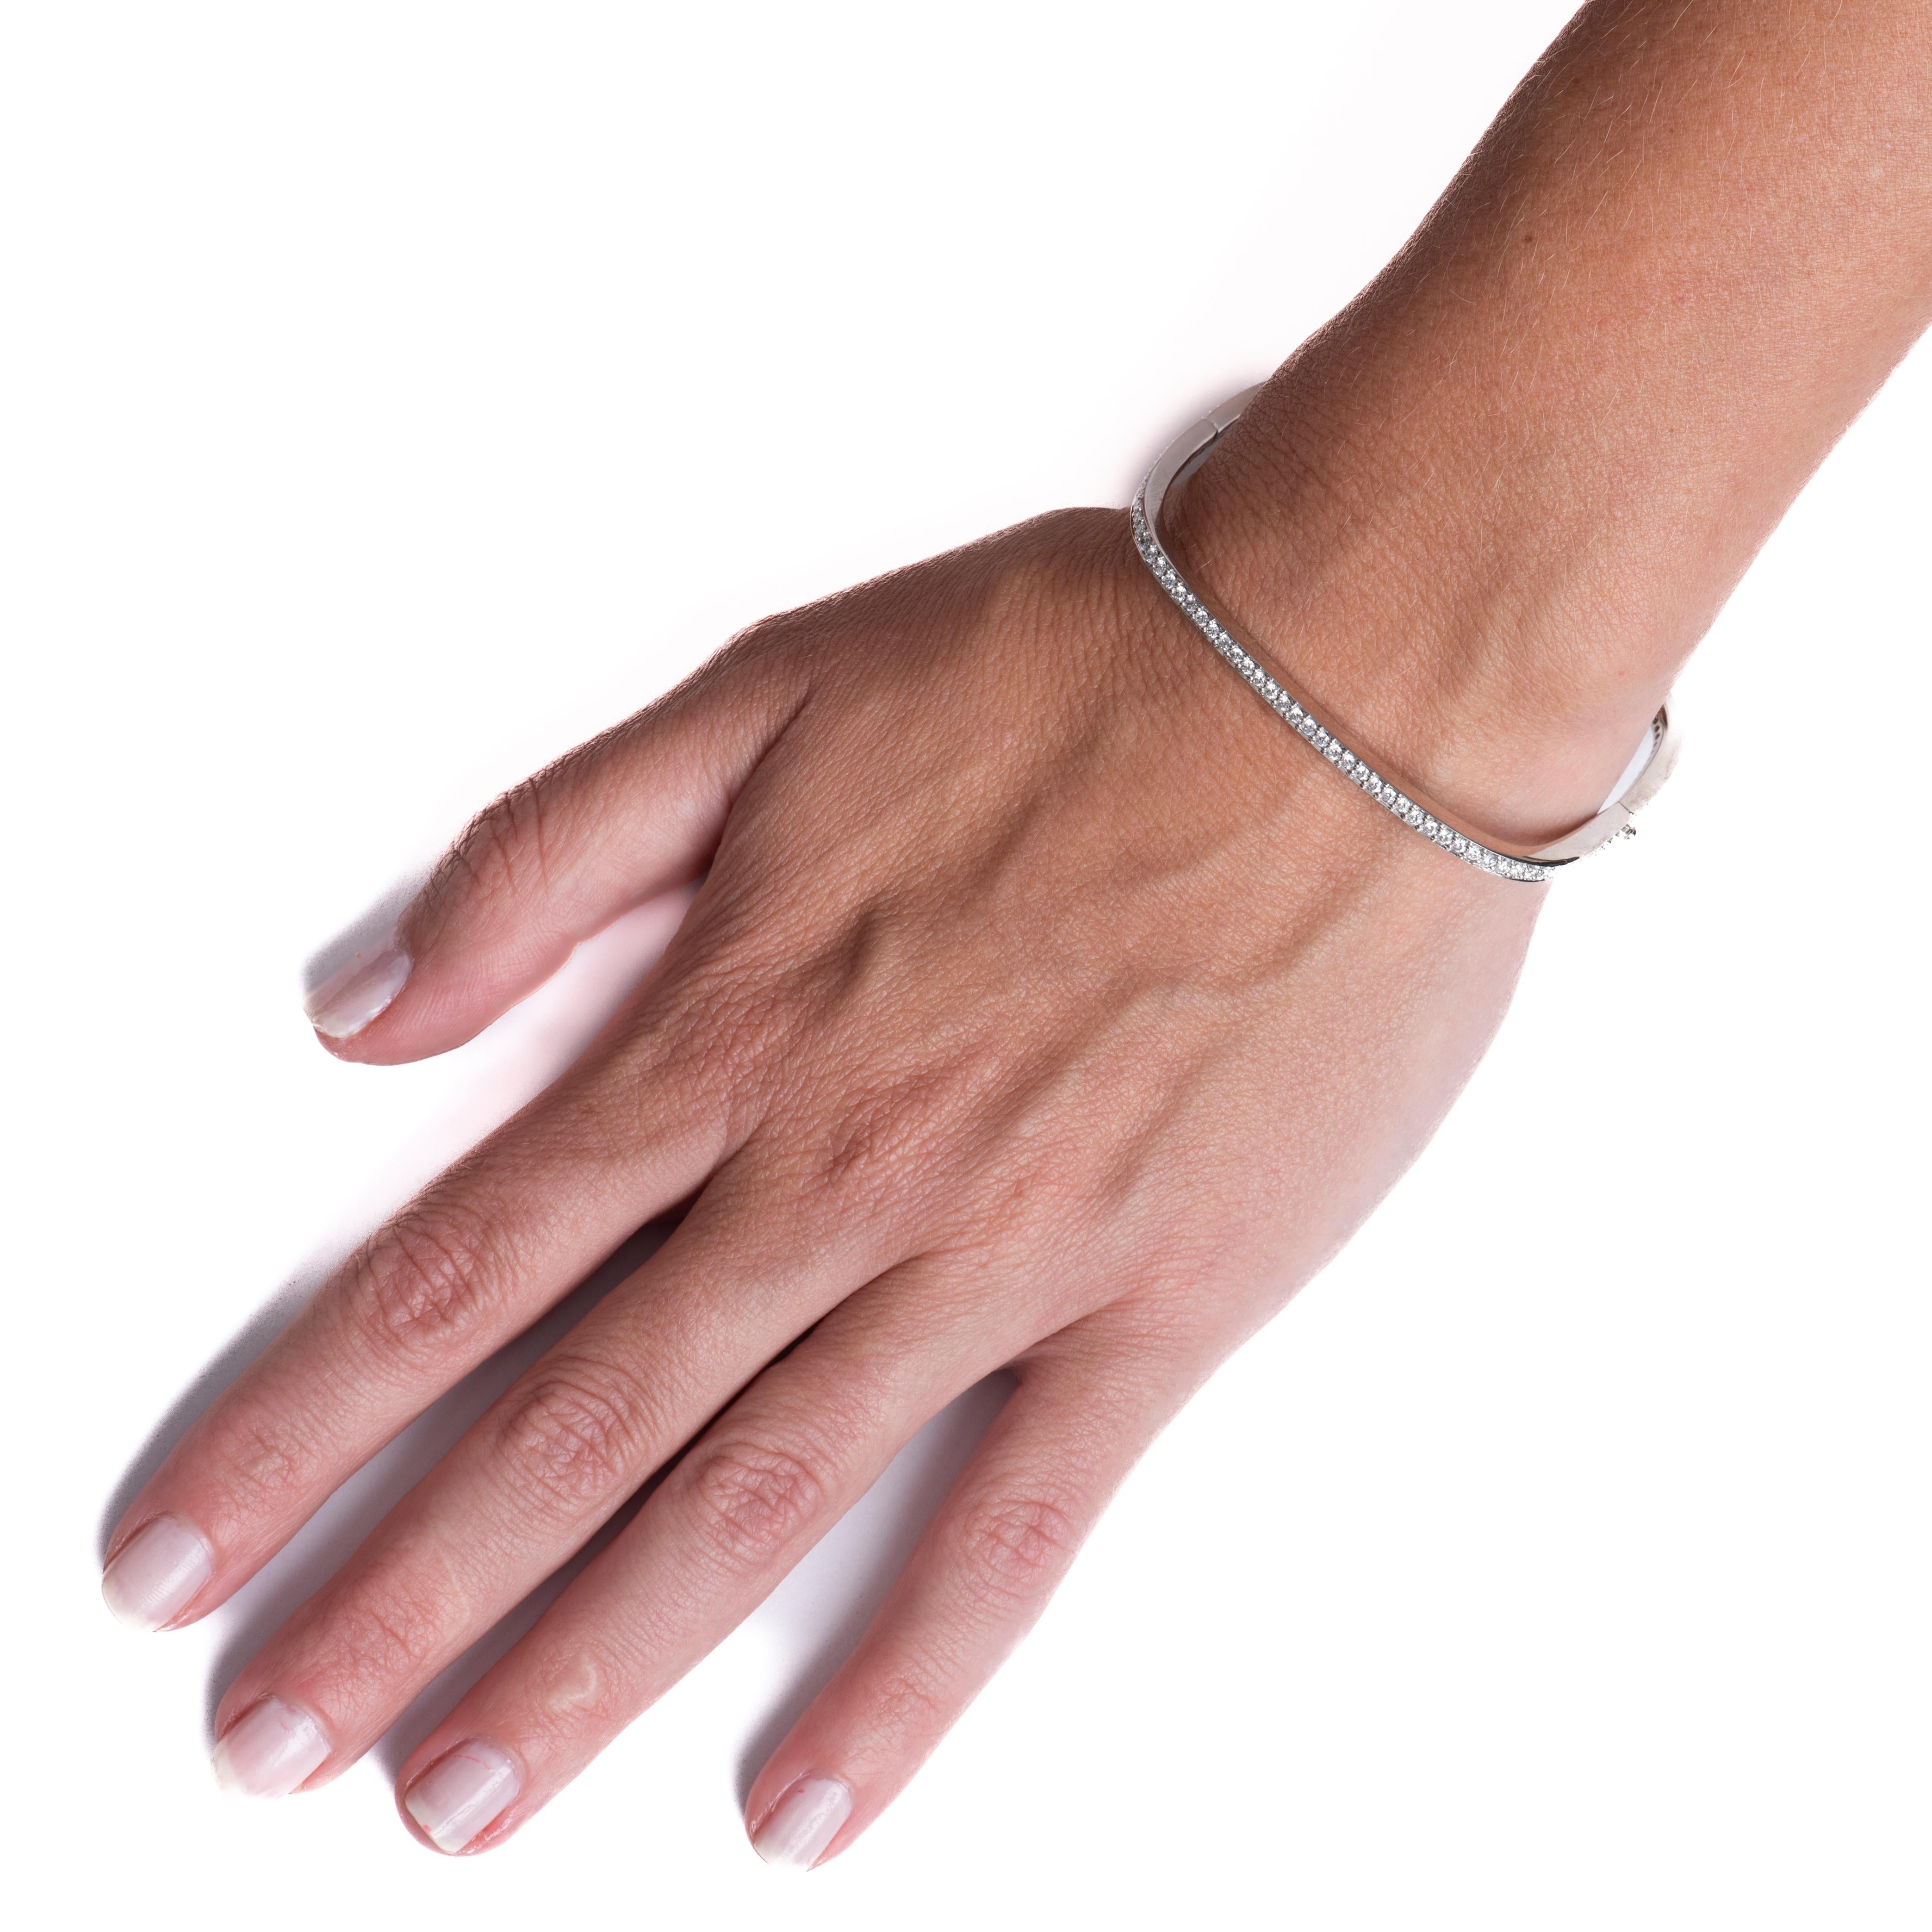 Ce bracelet de forme carrée présente un poids total de 2,10 carats de diamants naturels de taille ronde et brillante sertis dans de l'or blanc 18 carats. Portez-les seuls ou superposez-les à vos autres bracelets préférés pour un look unique.